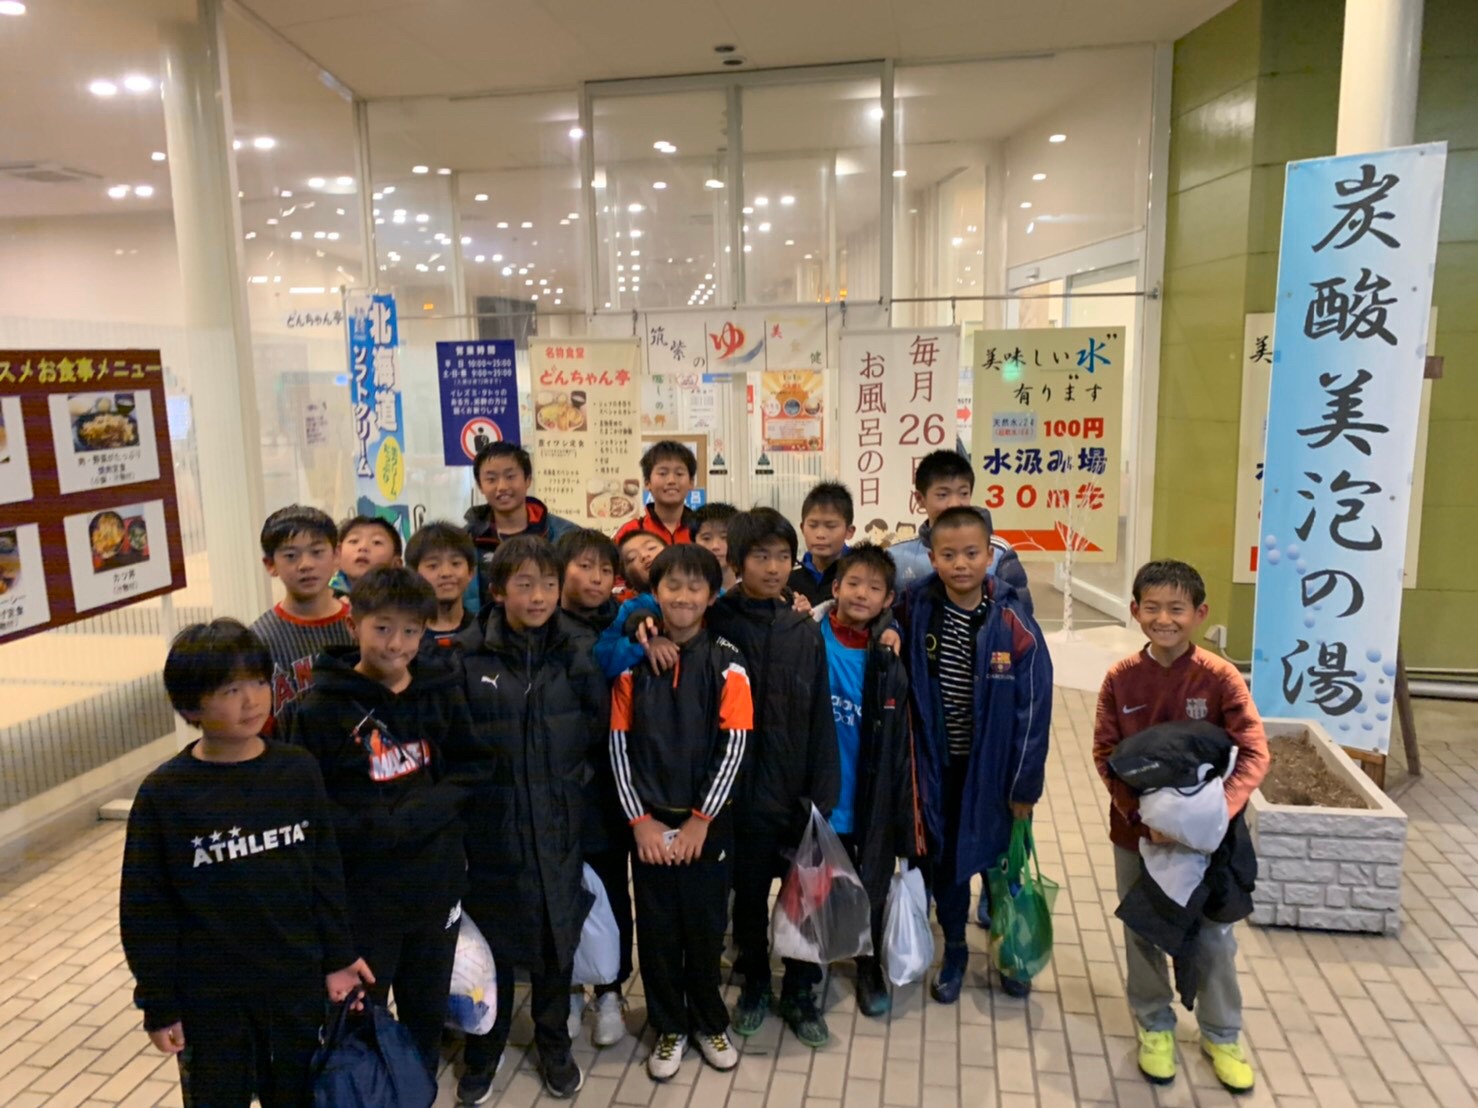 19年12 28 29 福岡にて小学生高学年対象 ステージアップ合宿 を開催しました 開催報告 ジュニアサッカーnews